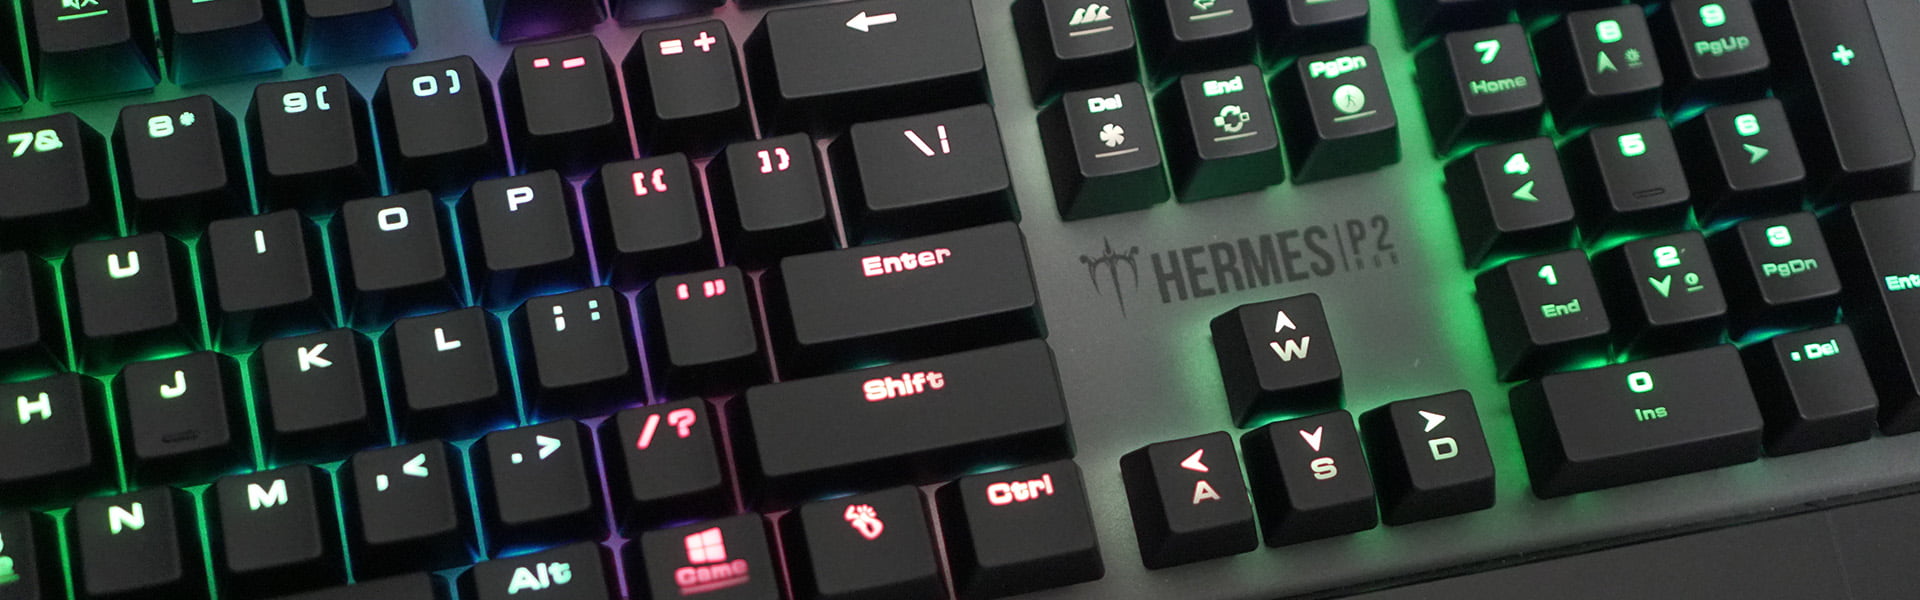 GAMDIAS Hermes P2 Gaming Keyboard Review 13